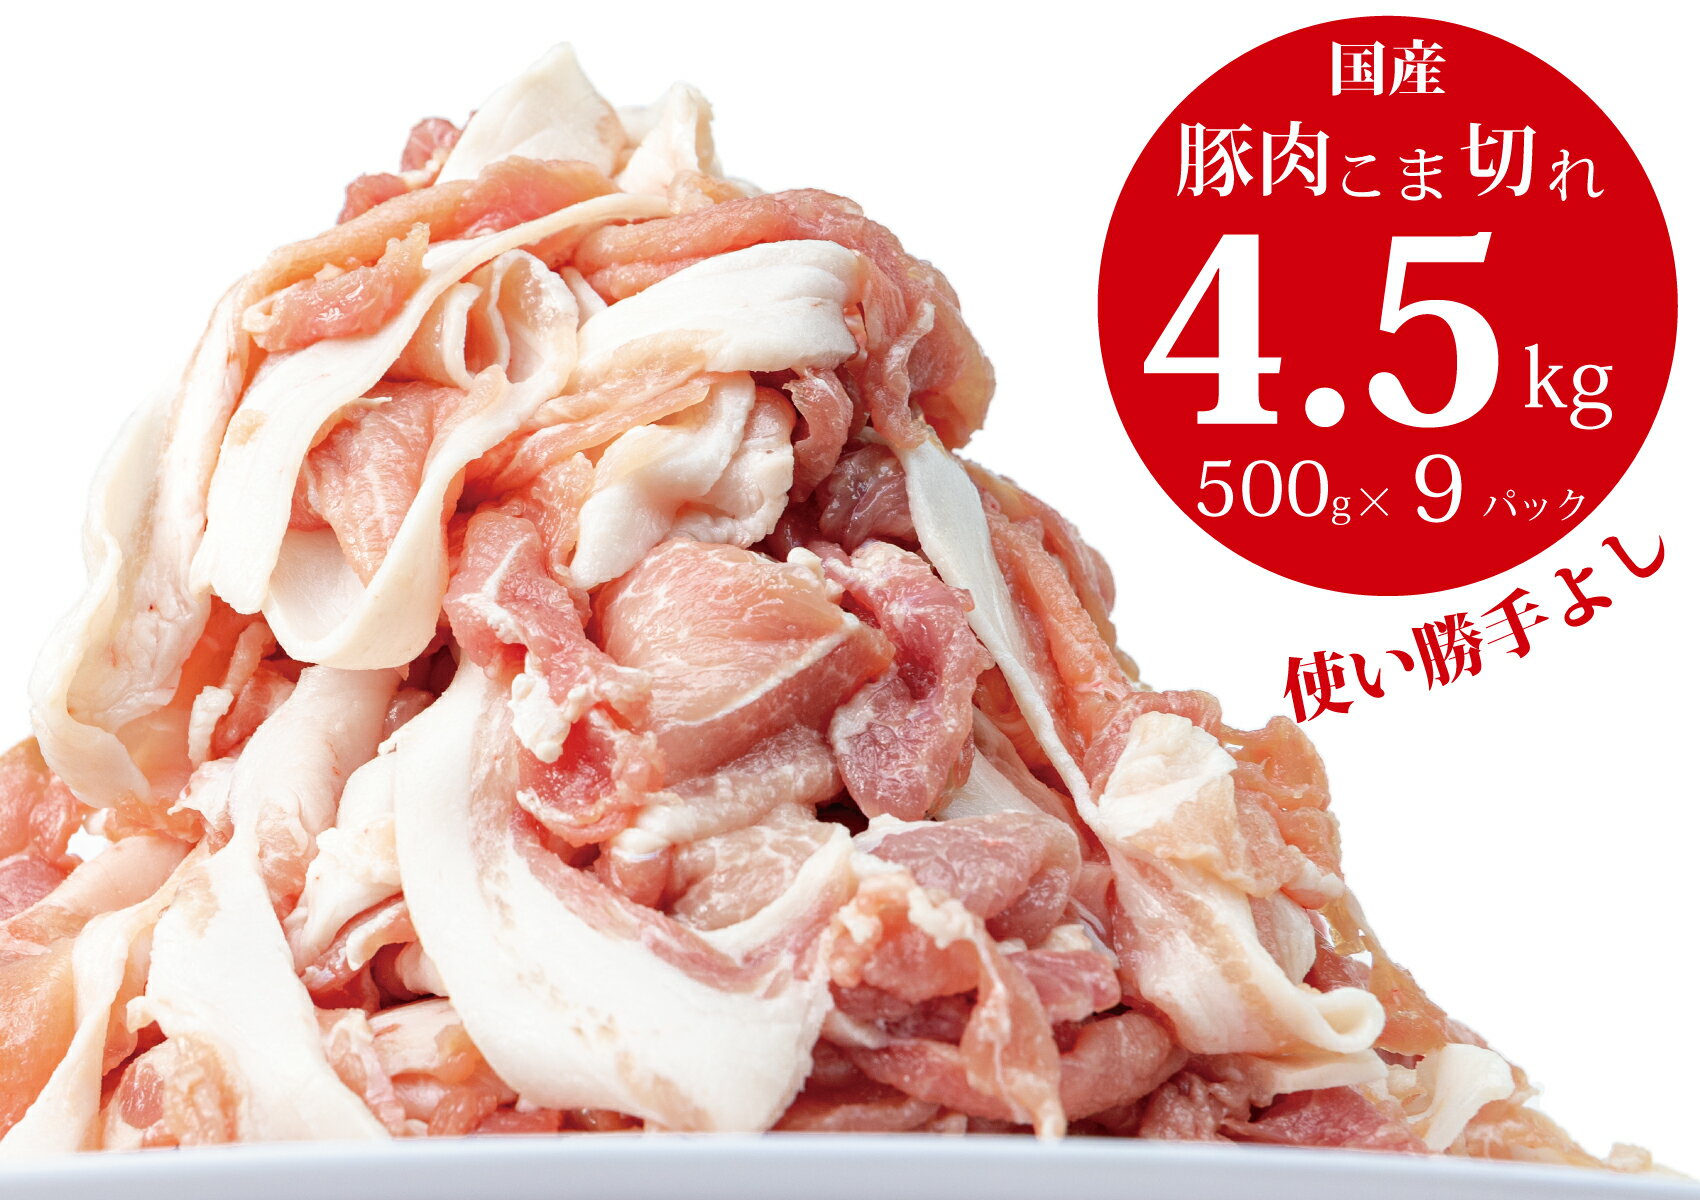 豚肉 切り落とし こま切れ 4.5kg(500g×9袋)小分け 冷凍 国産 香川県 善通寺市 人気